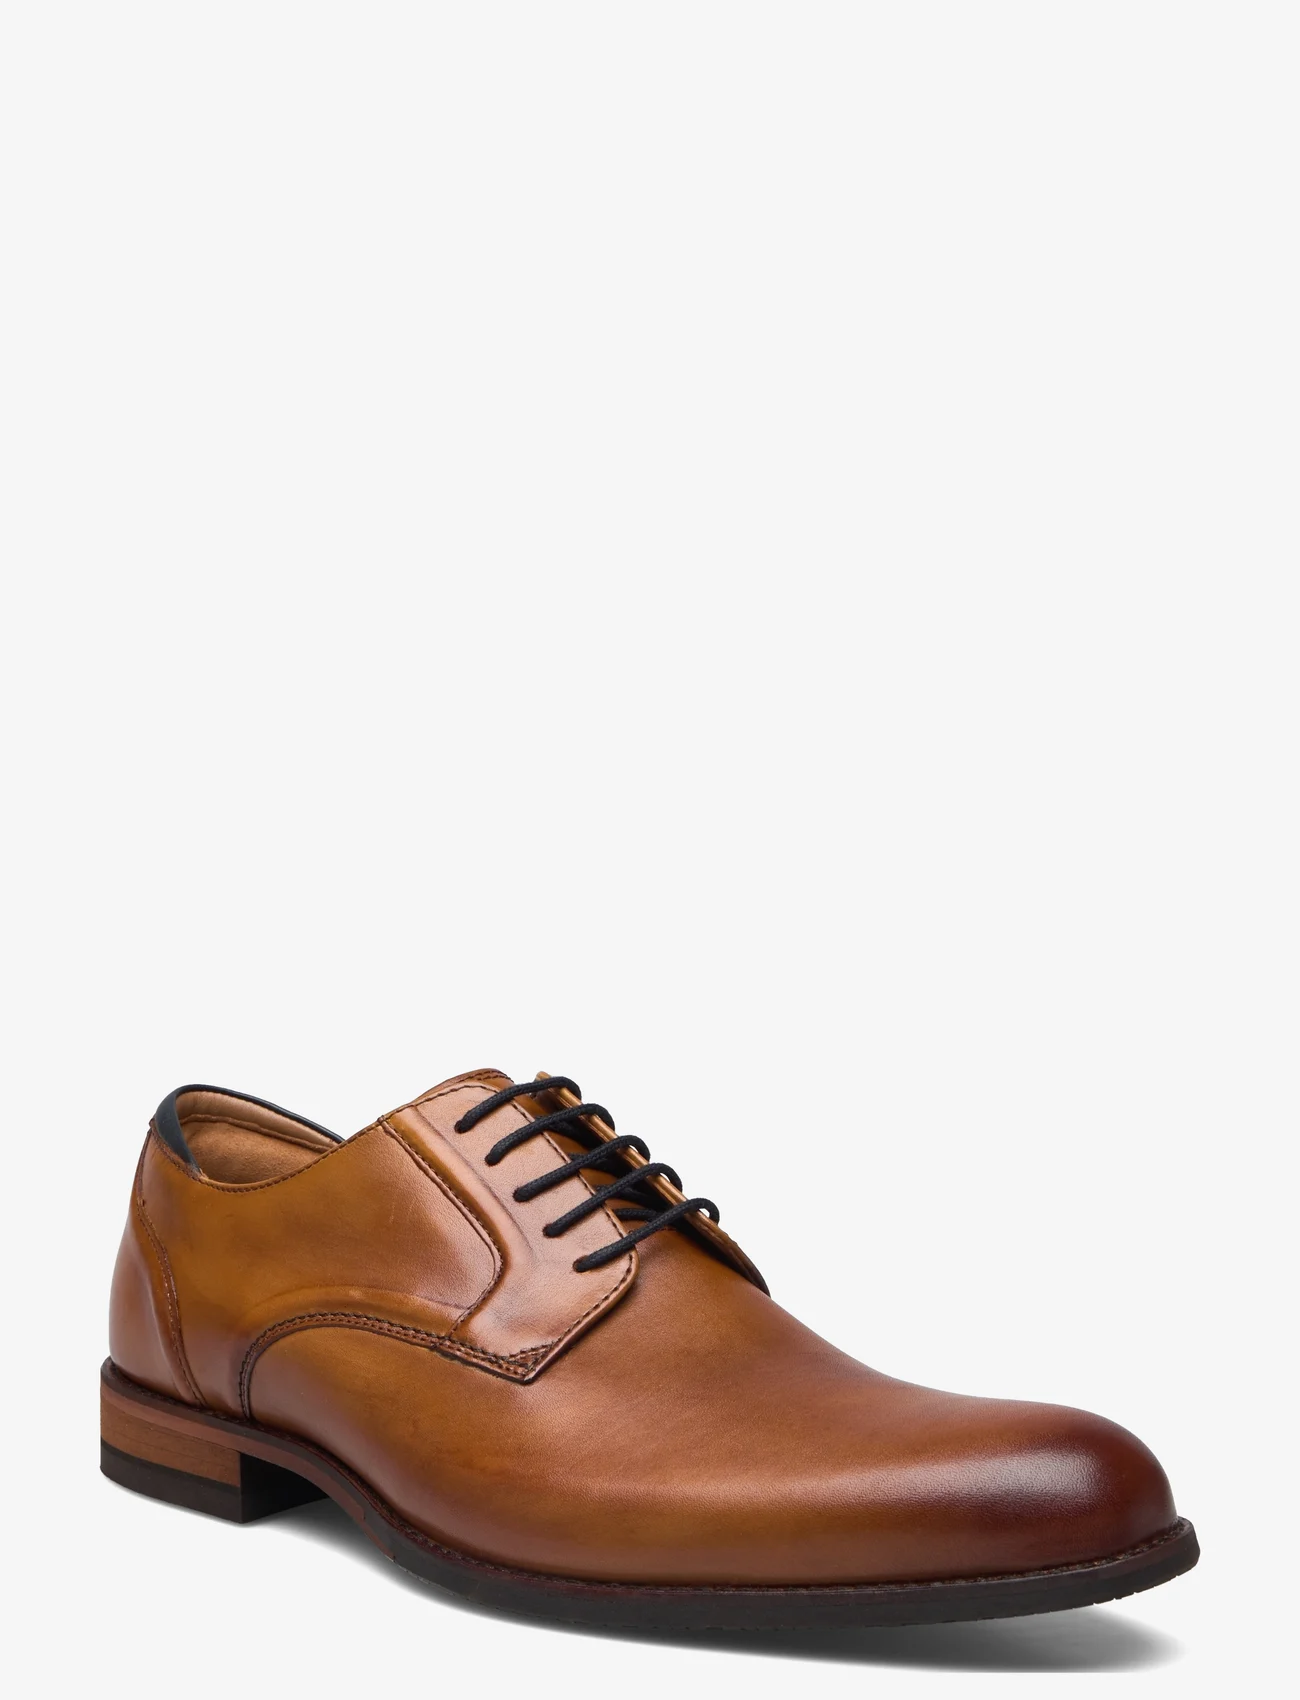 Clarks - CraftArlo Lace G - Šņorējamas kurpes - 5241 tan leather - 0